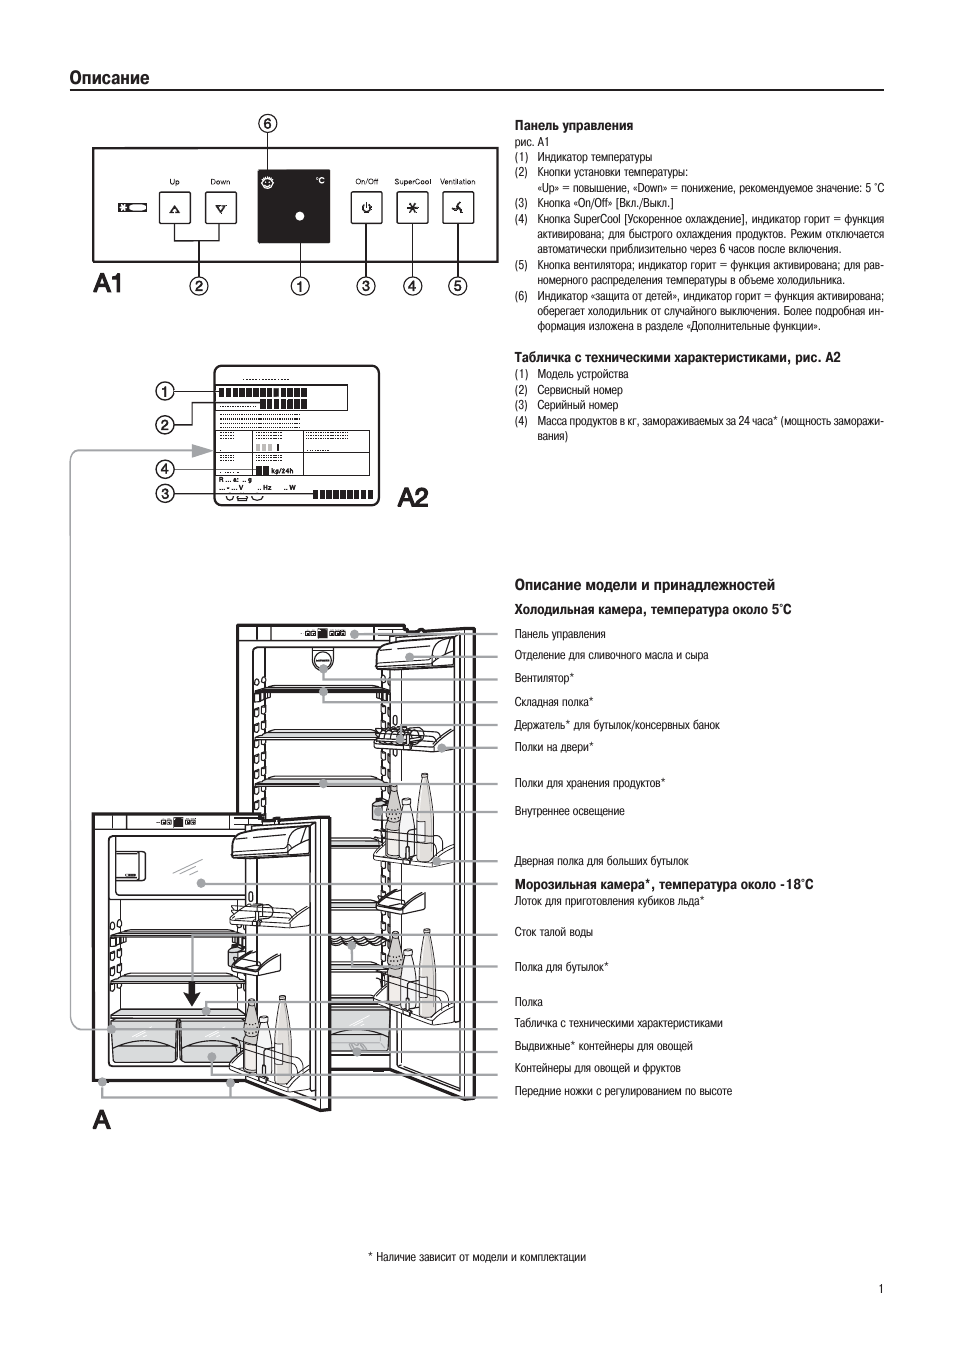 Панель управления холодильника Либхер двухкамерный